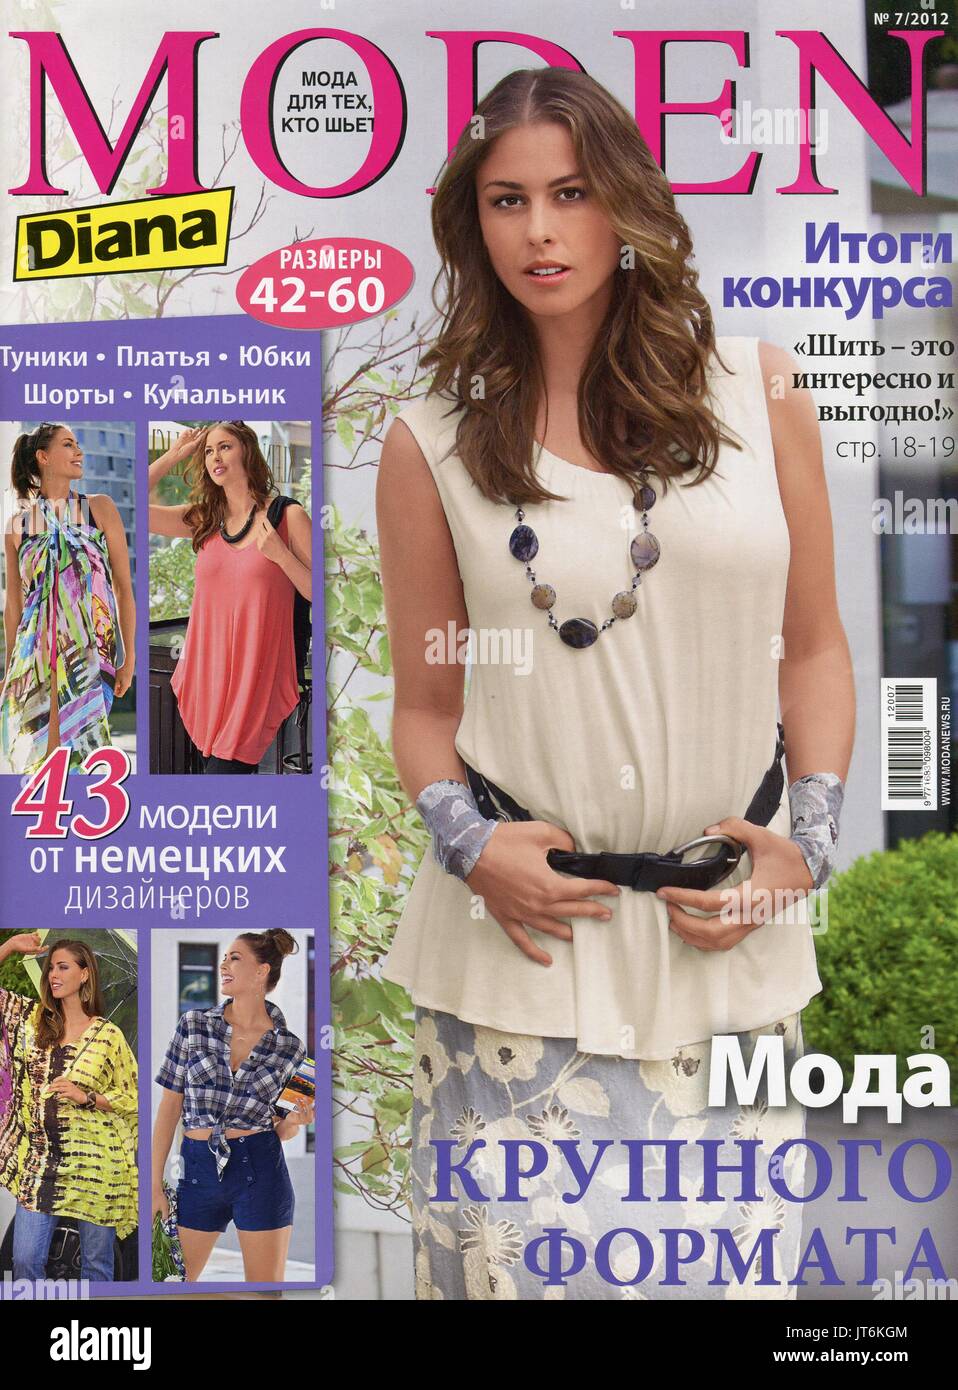 Vordere Abdeckung der Russischen Zeitschrift "den Diana'. Stockfoto